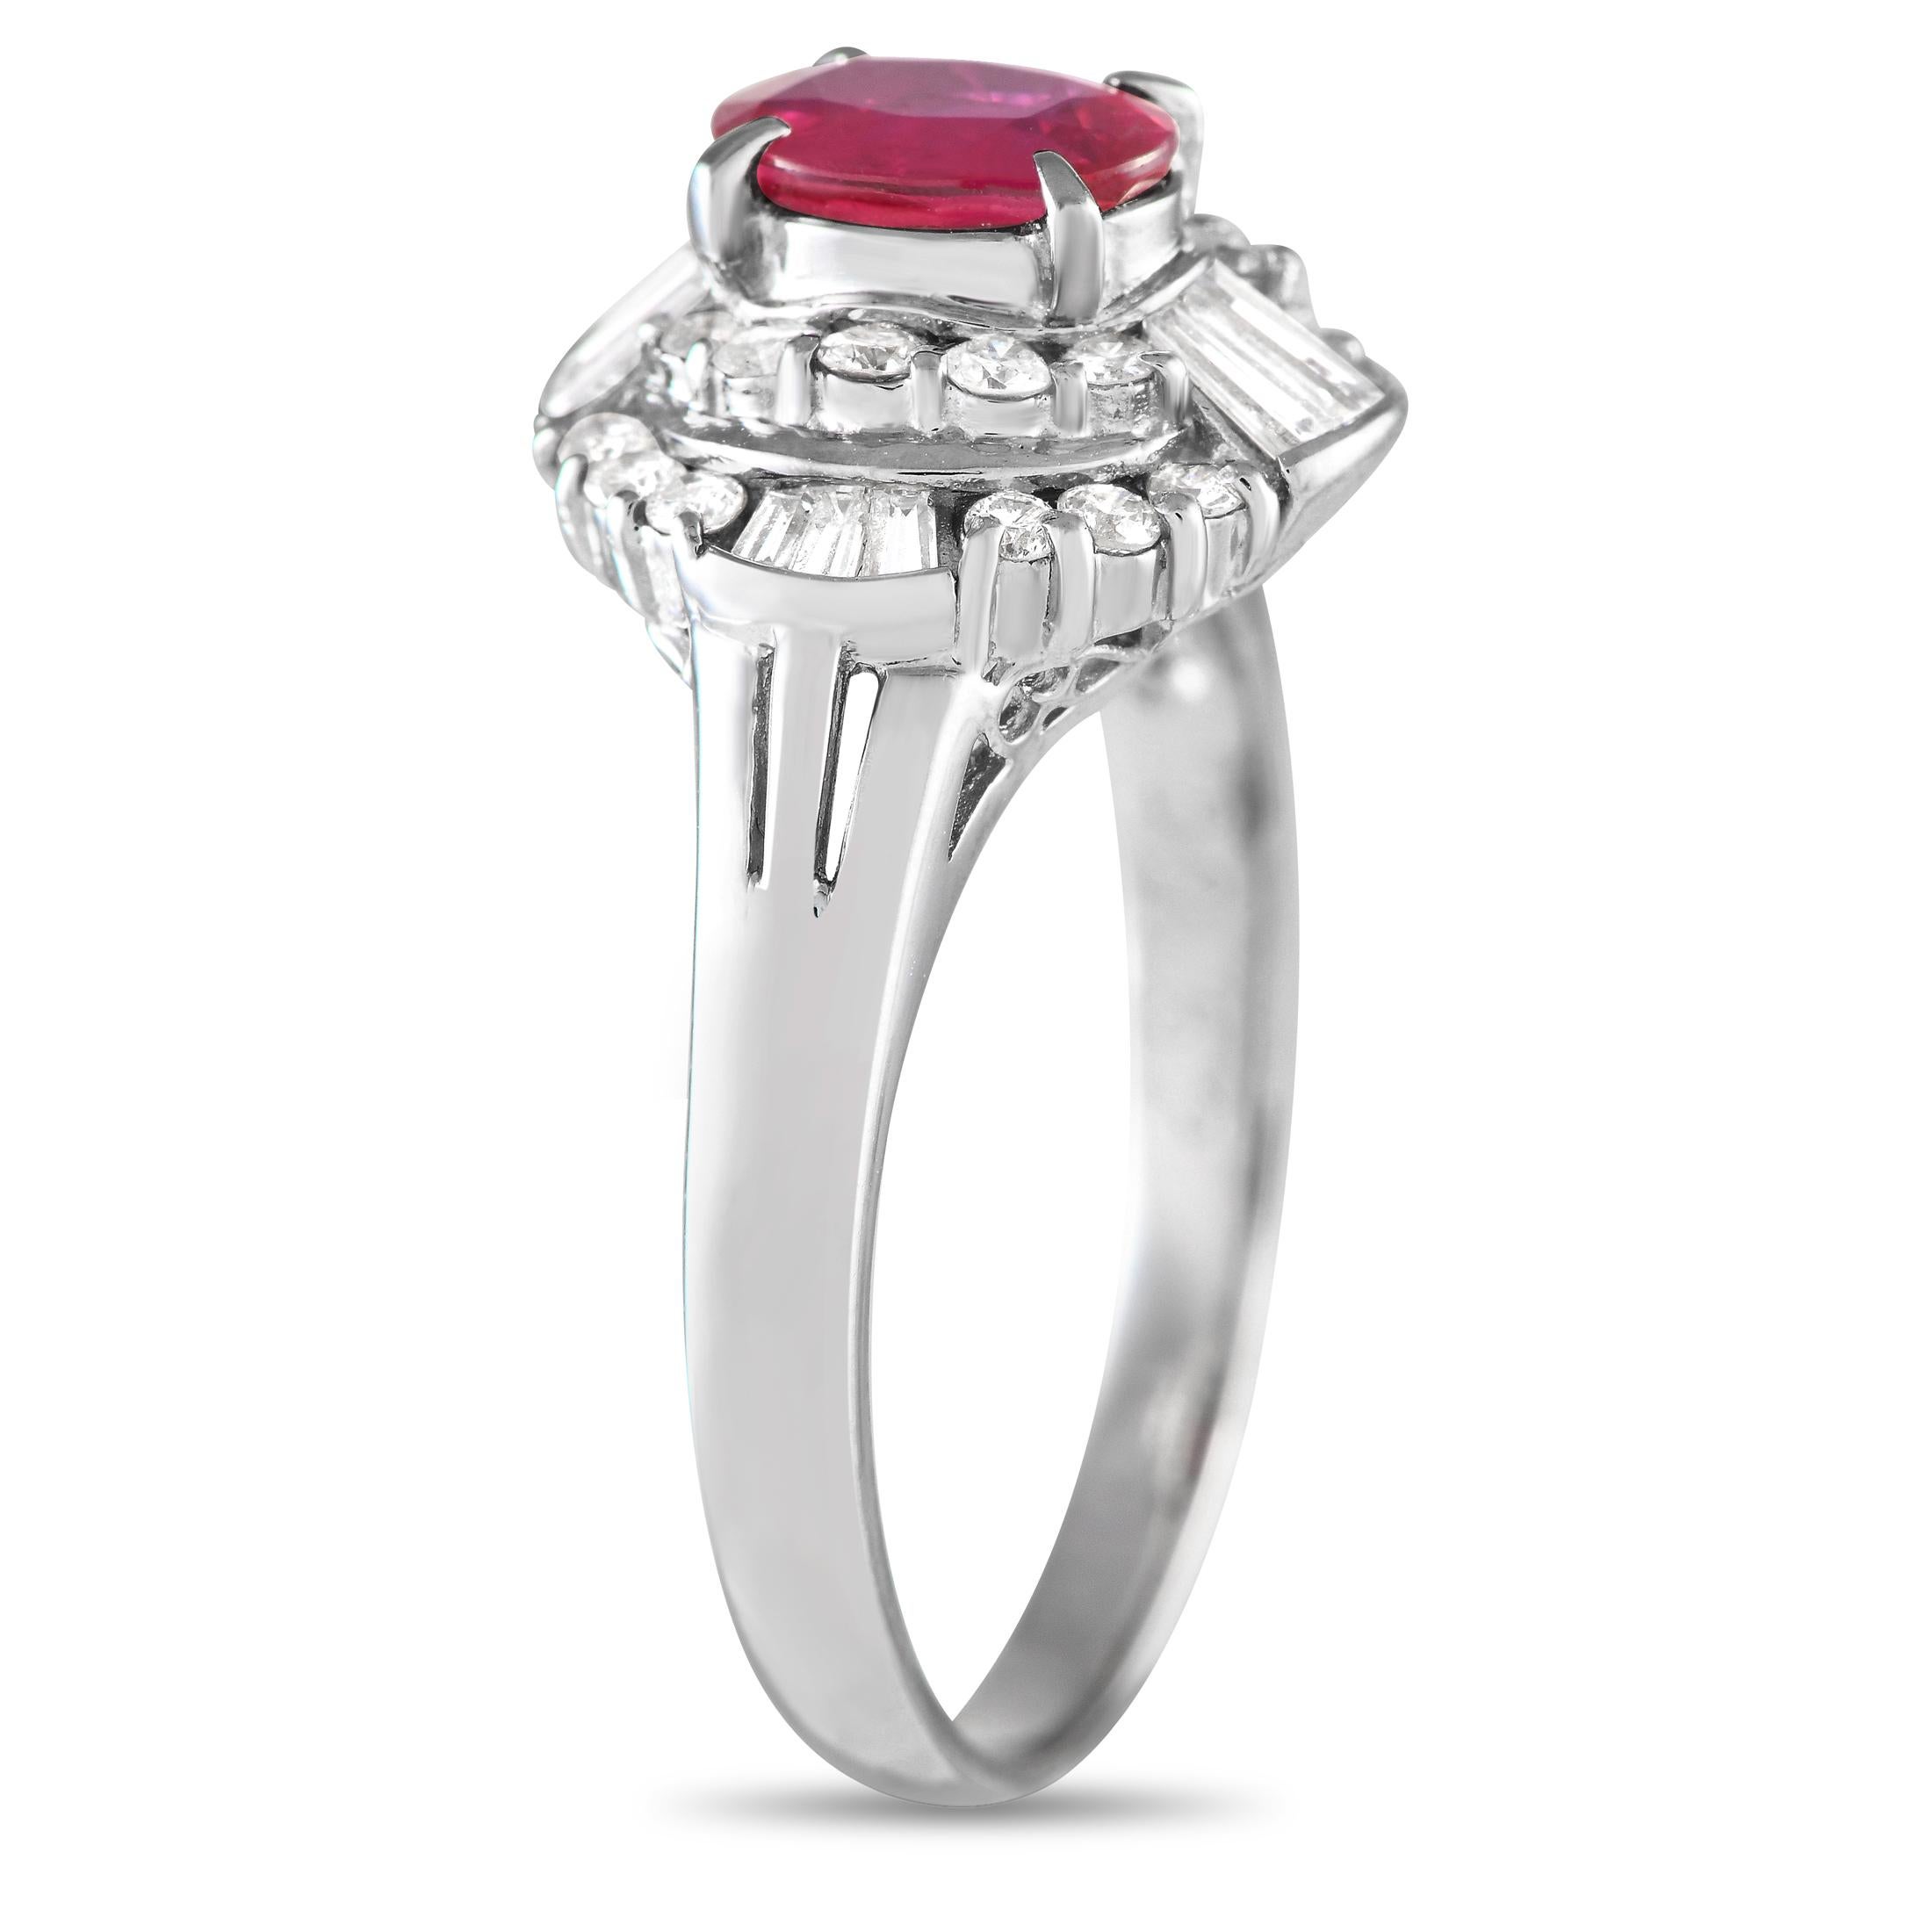 Winkel und Kurven machen die verführerische Schönheit dieses Rings aus Diamanten und Rubinen aus. Das Platinband hat zierlich geteilte Schultern, die einen stufenförmigen Halo mit spitz zulaufenden Baguette- und runden Diamanten tragen. Im